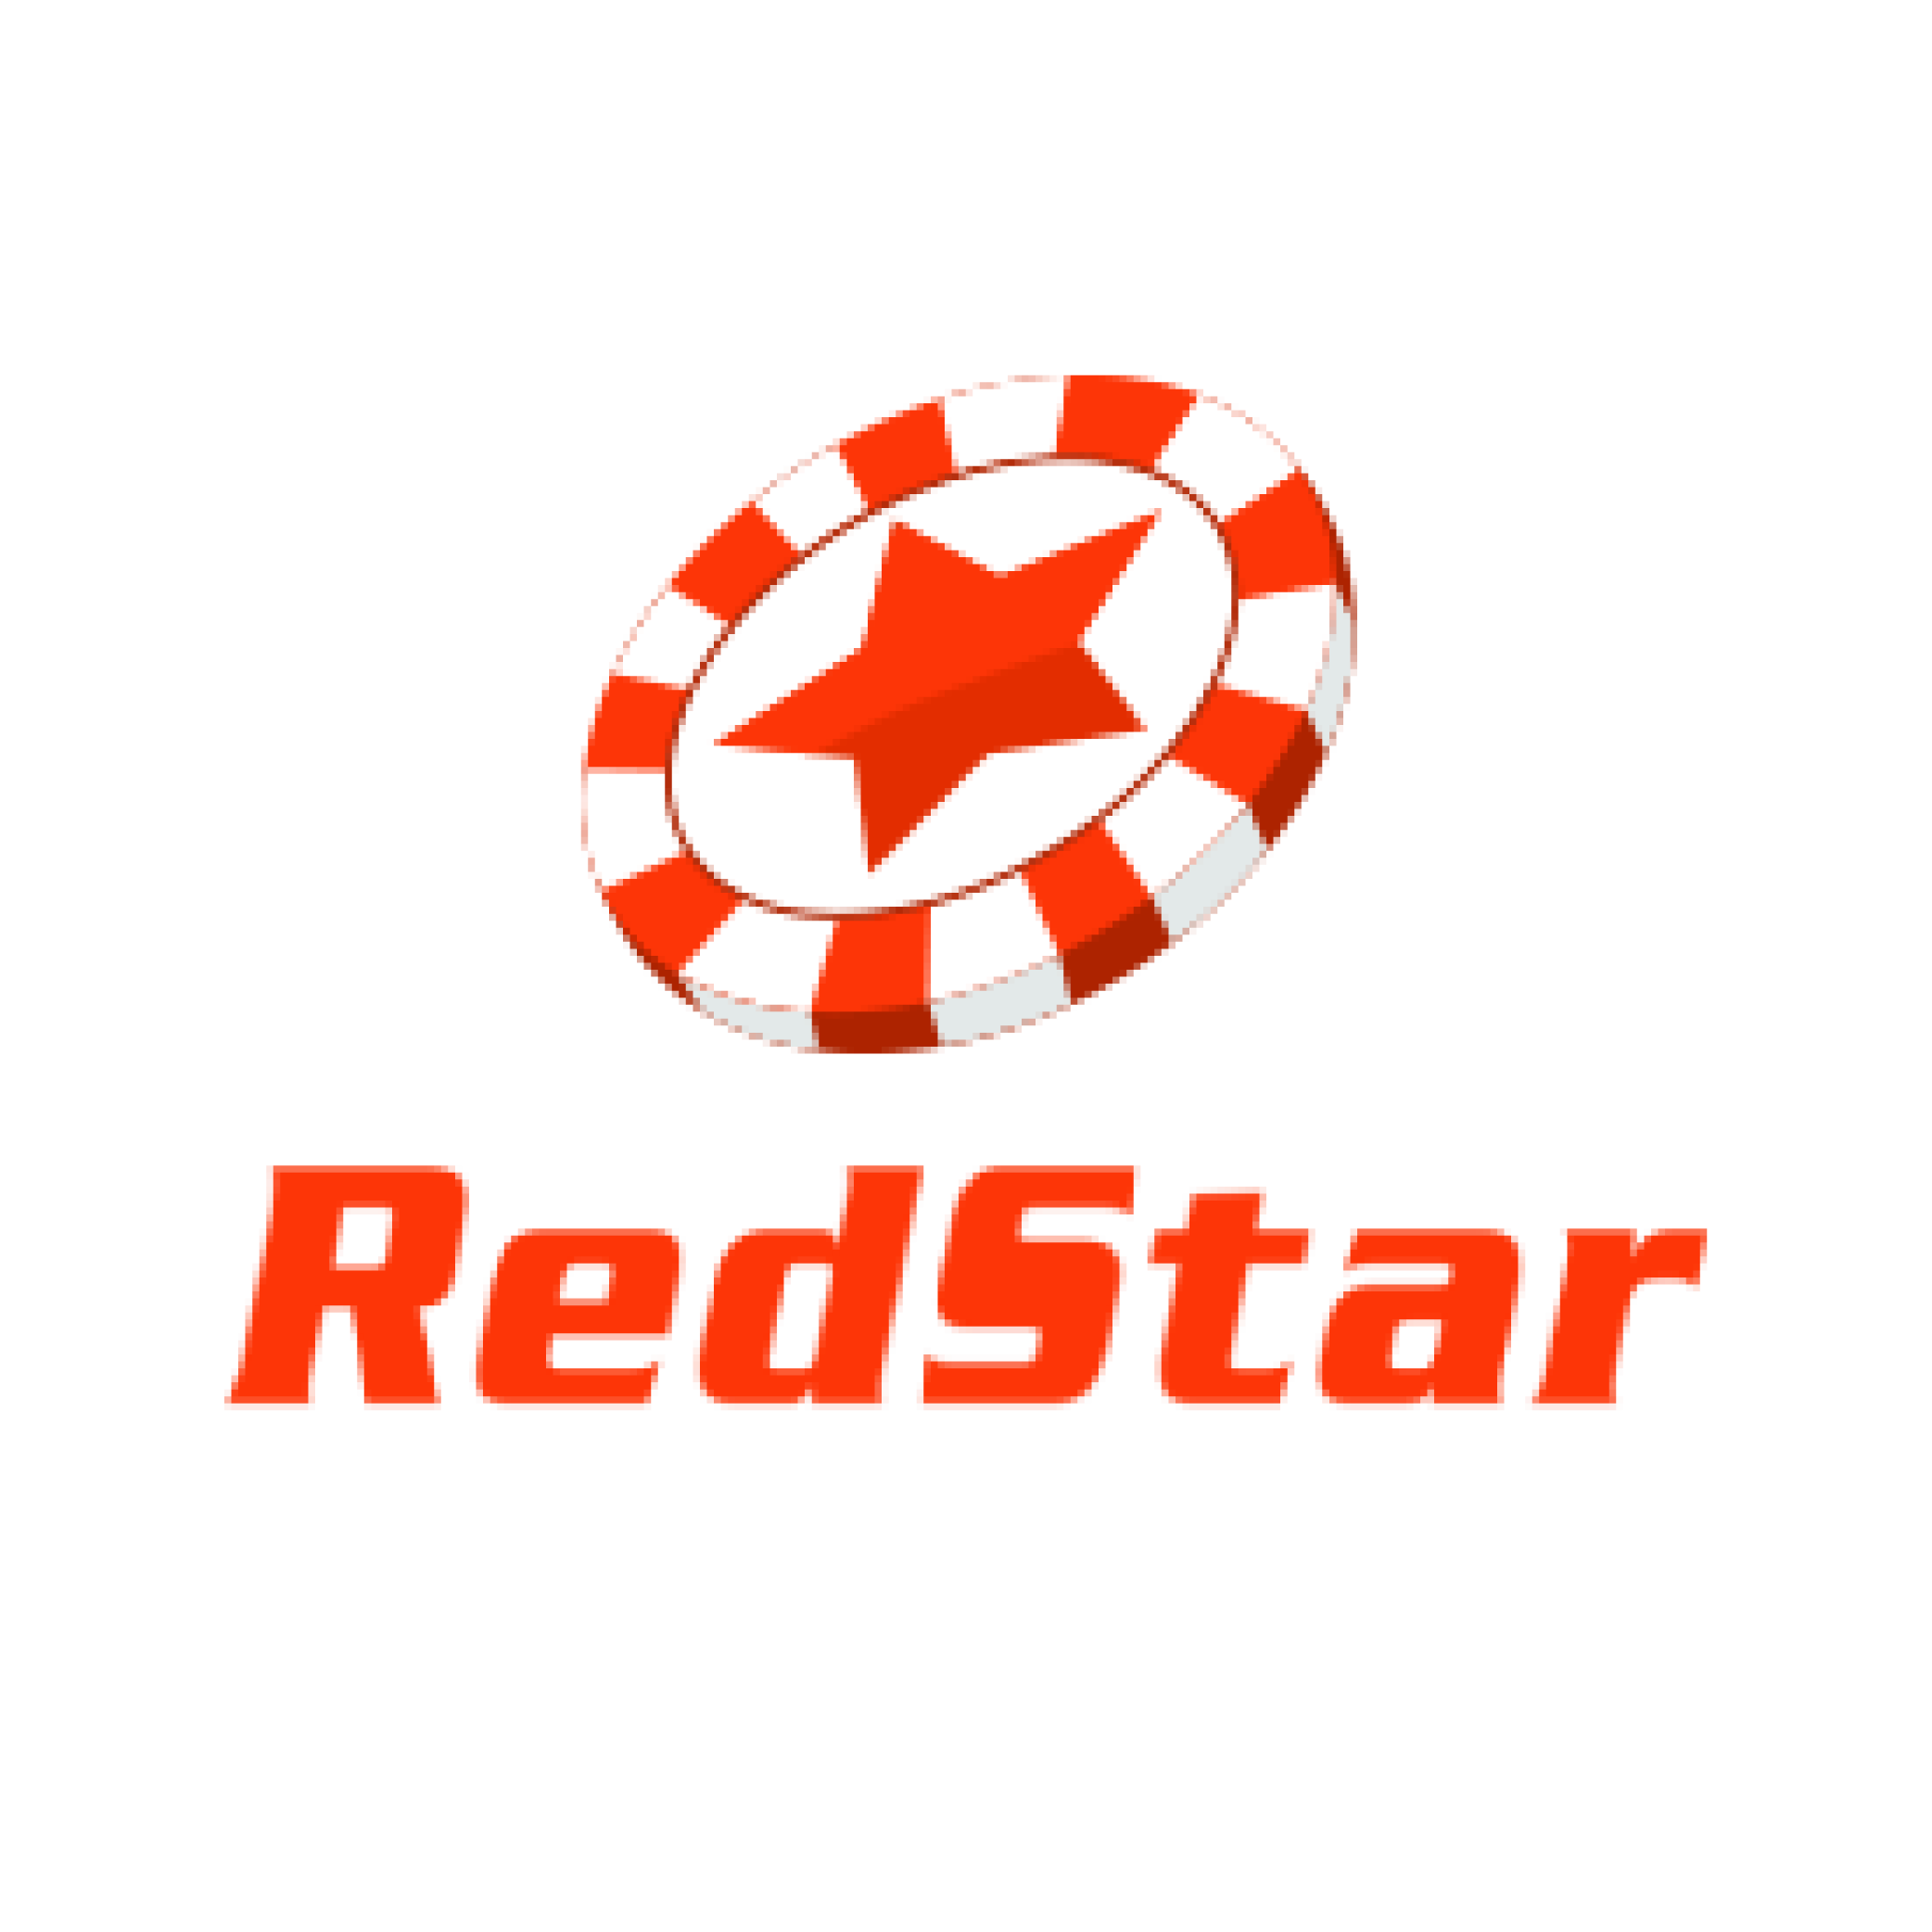 RedStar casino logo